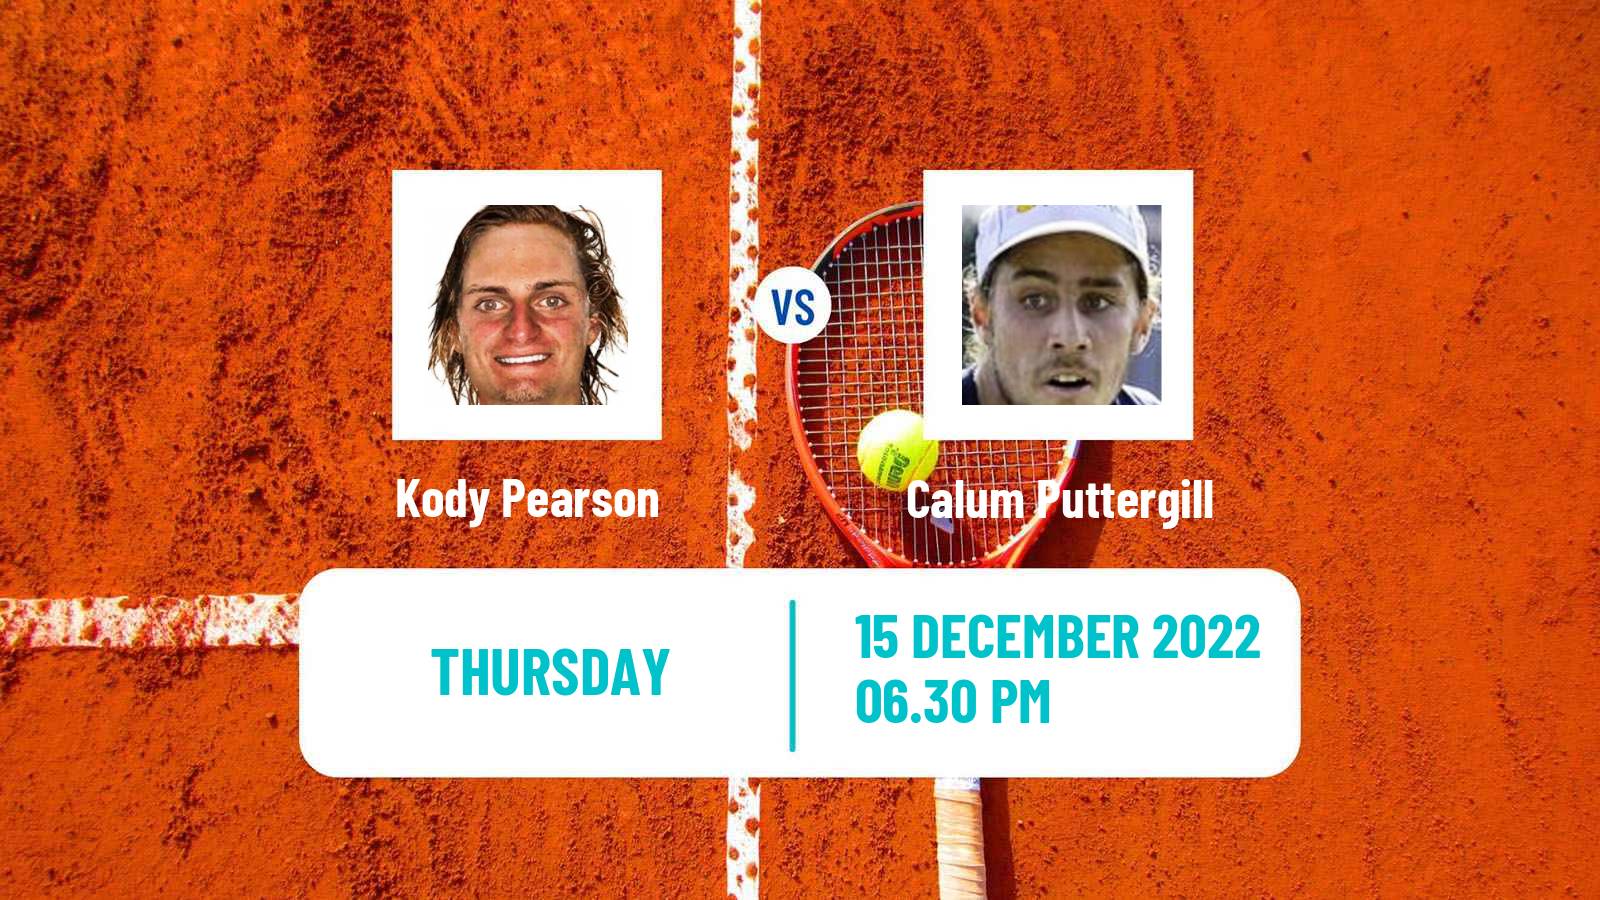 Tennis ITF Tournaments Kody Pearson - Calum Puttergill